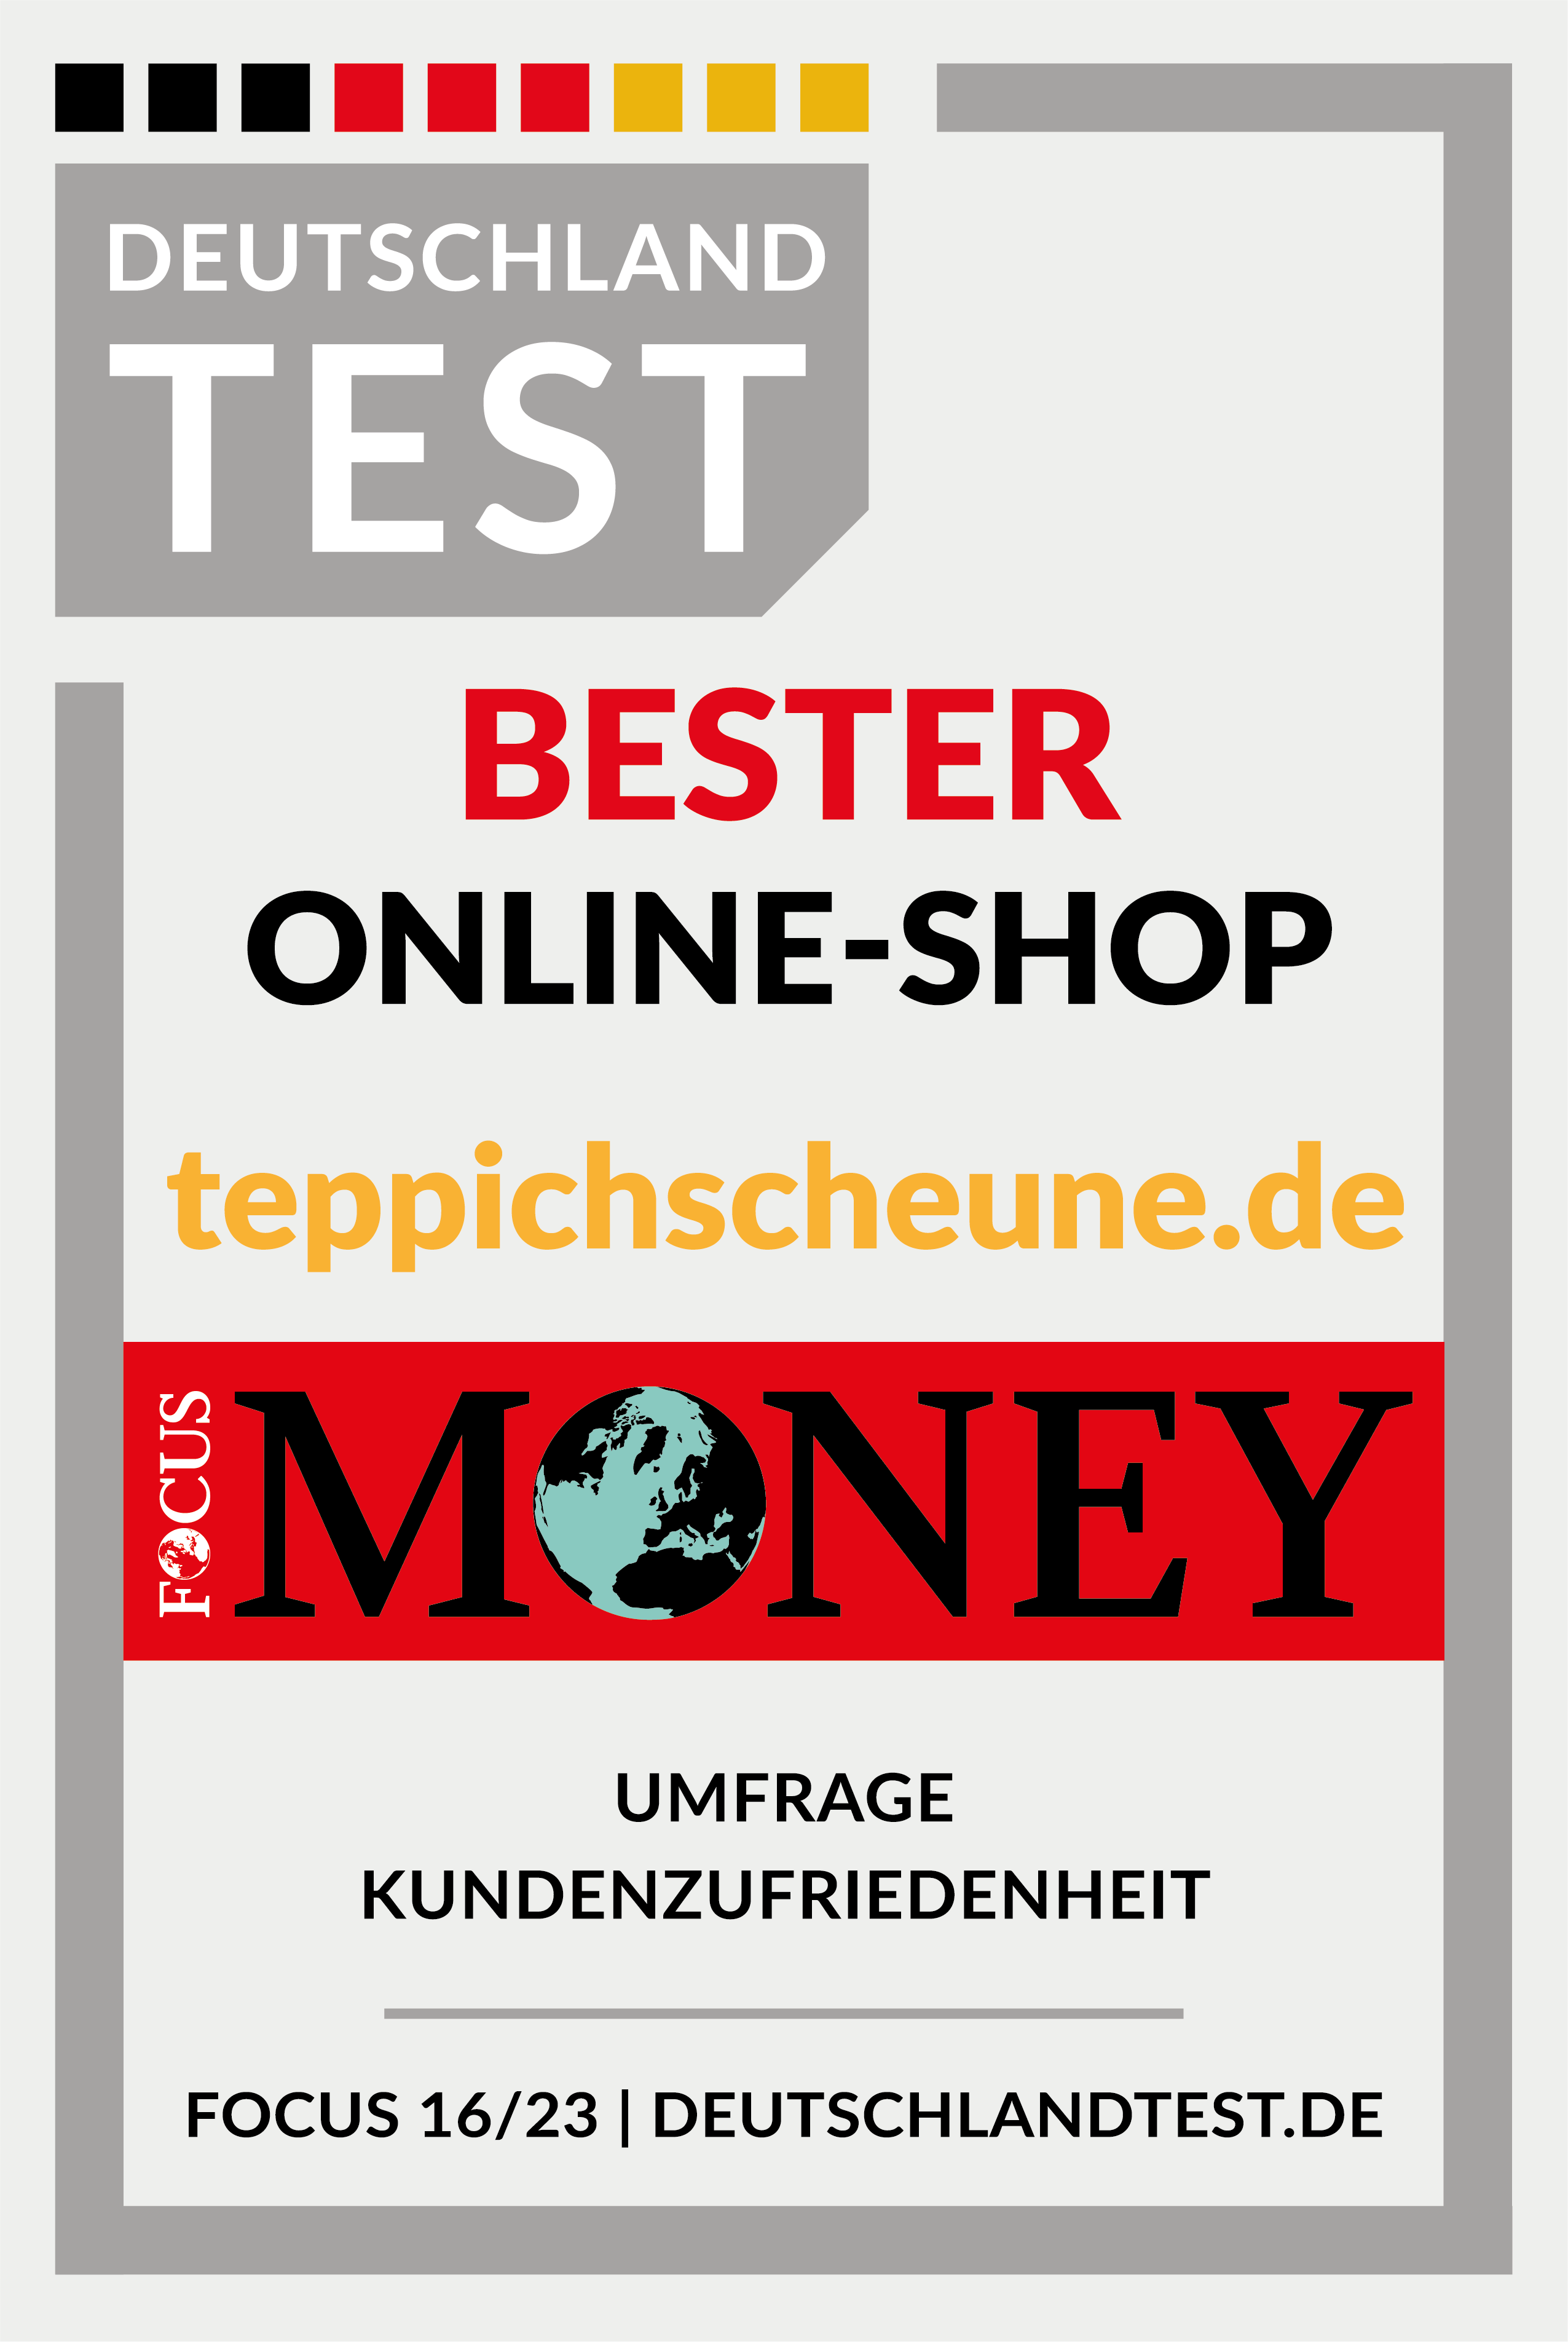 DeutschlandTest Top Online Shop